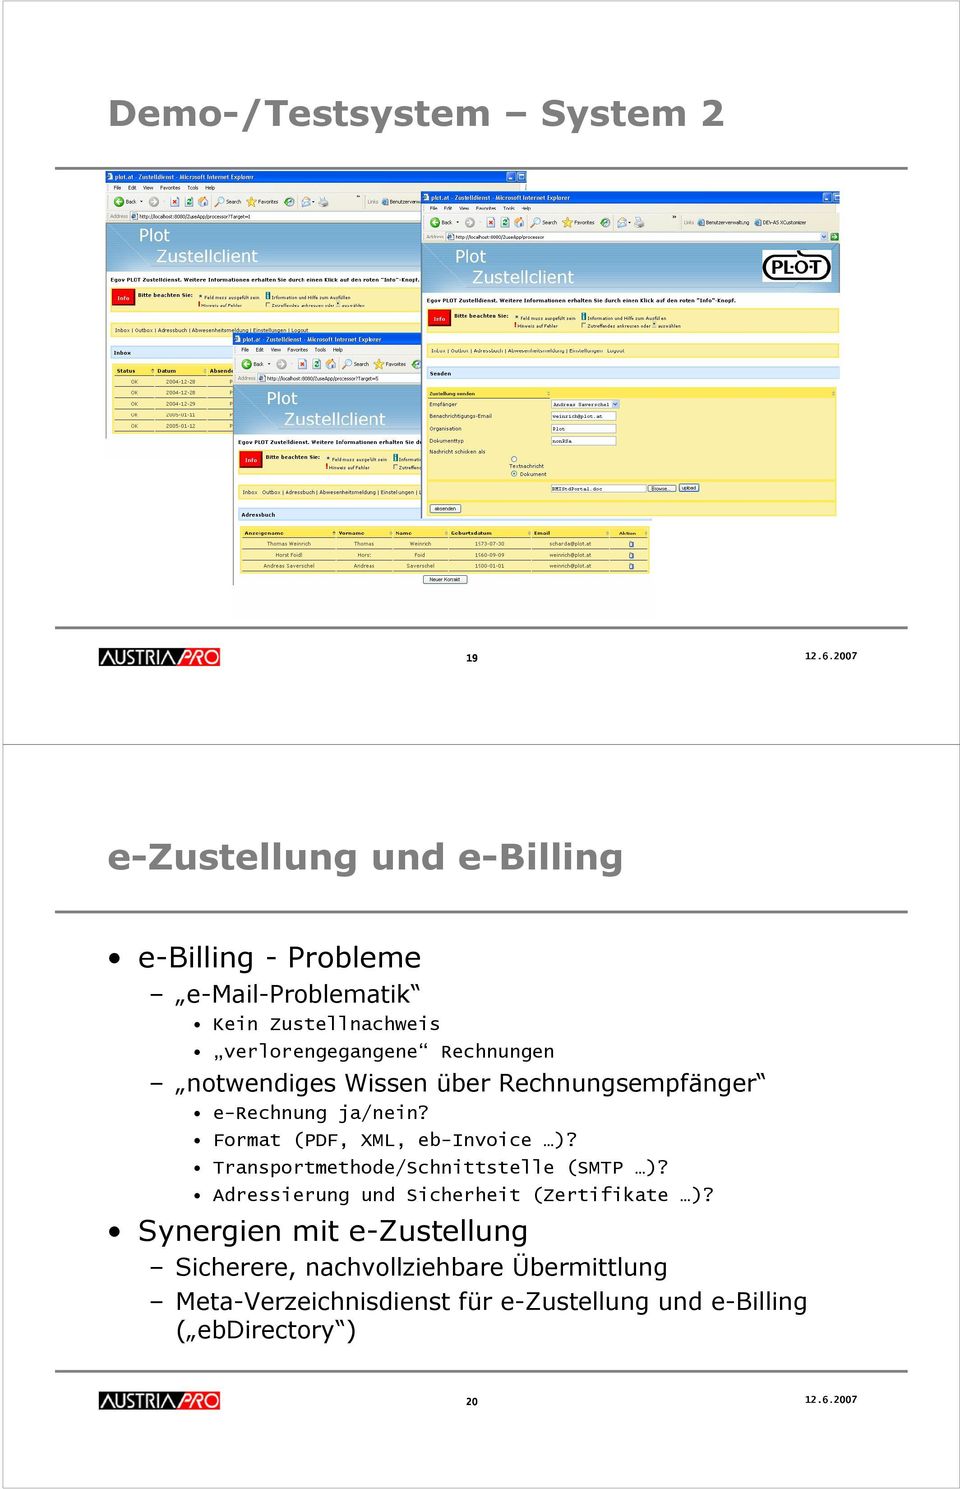 notwendiges Wissen über Rechnungsempfänger e-rechnung ja/nein? Format (PDF, XML, eb-invoice )?